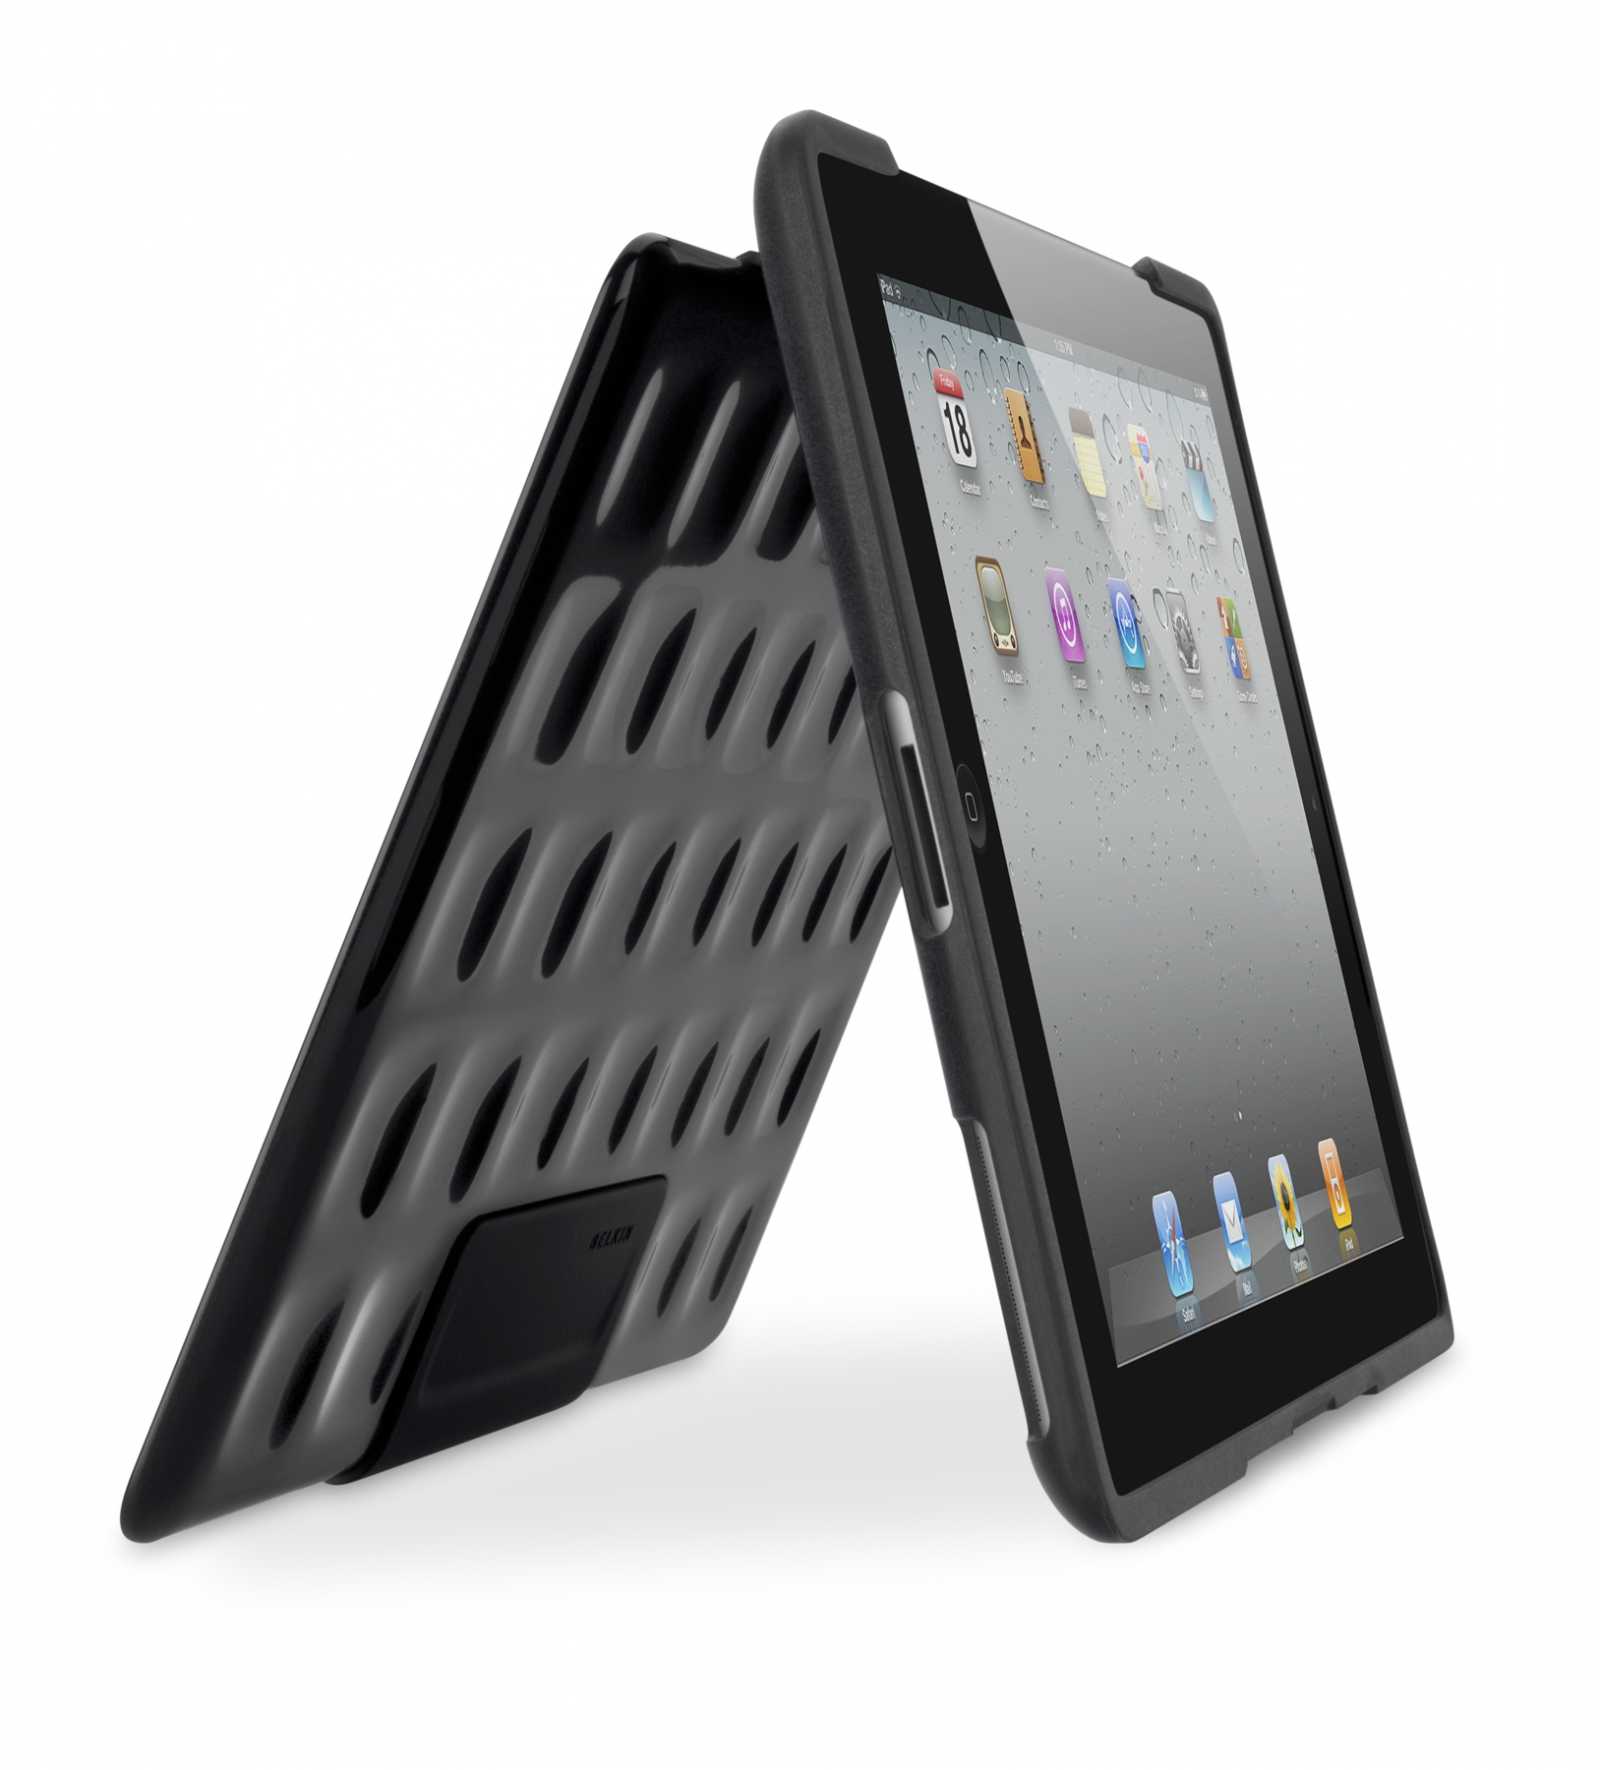 Nová pouzdra pro iPad 2 od Belkinu. Klasika ale i moderní design